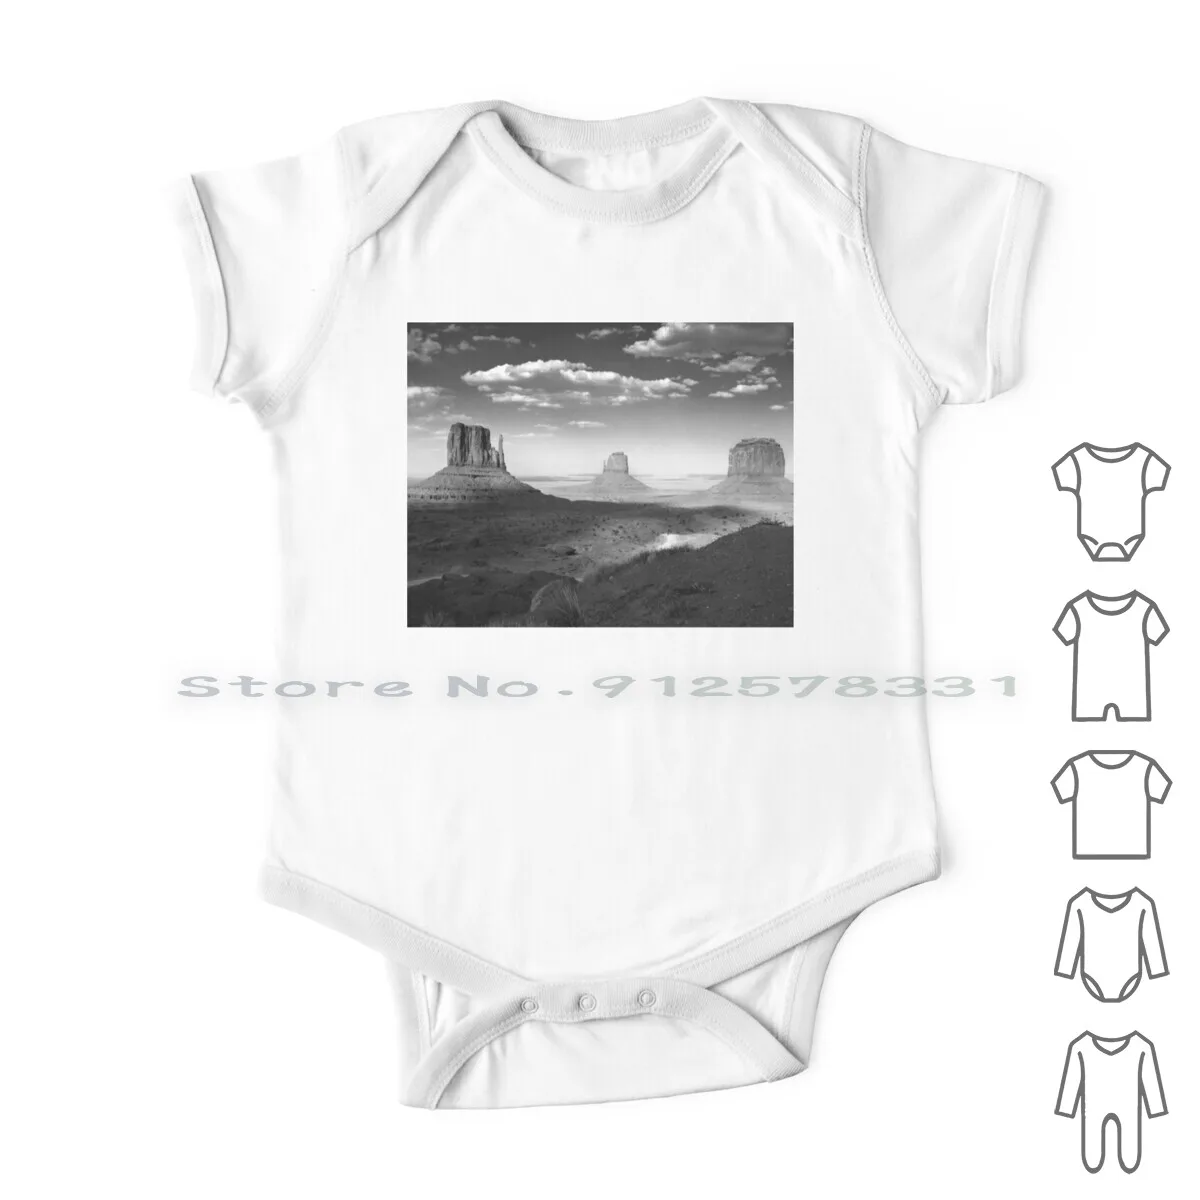 

Комбинезон для новорожденных с долиной монумента в черно-белом цвете, хлопковые комбинезоны, распродажа, фото Аризона, черно-белая пустыня